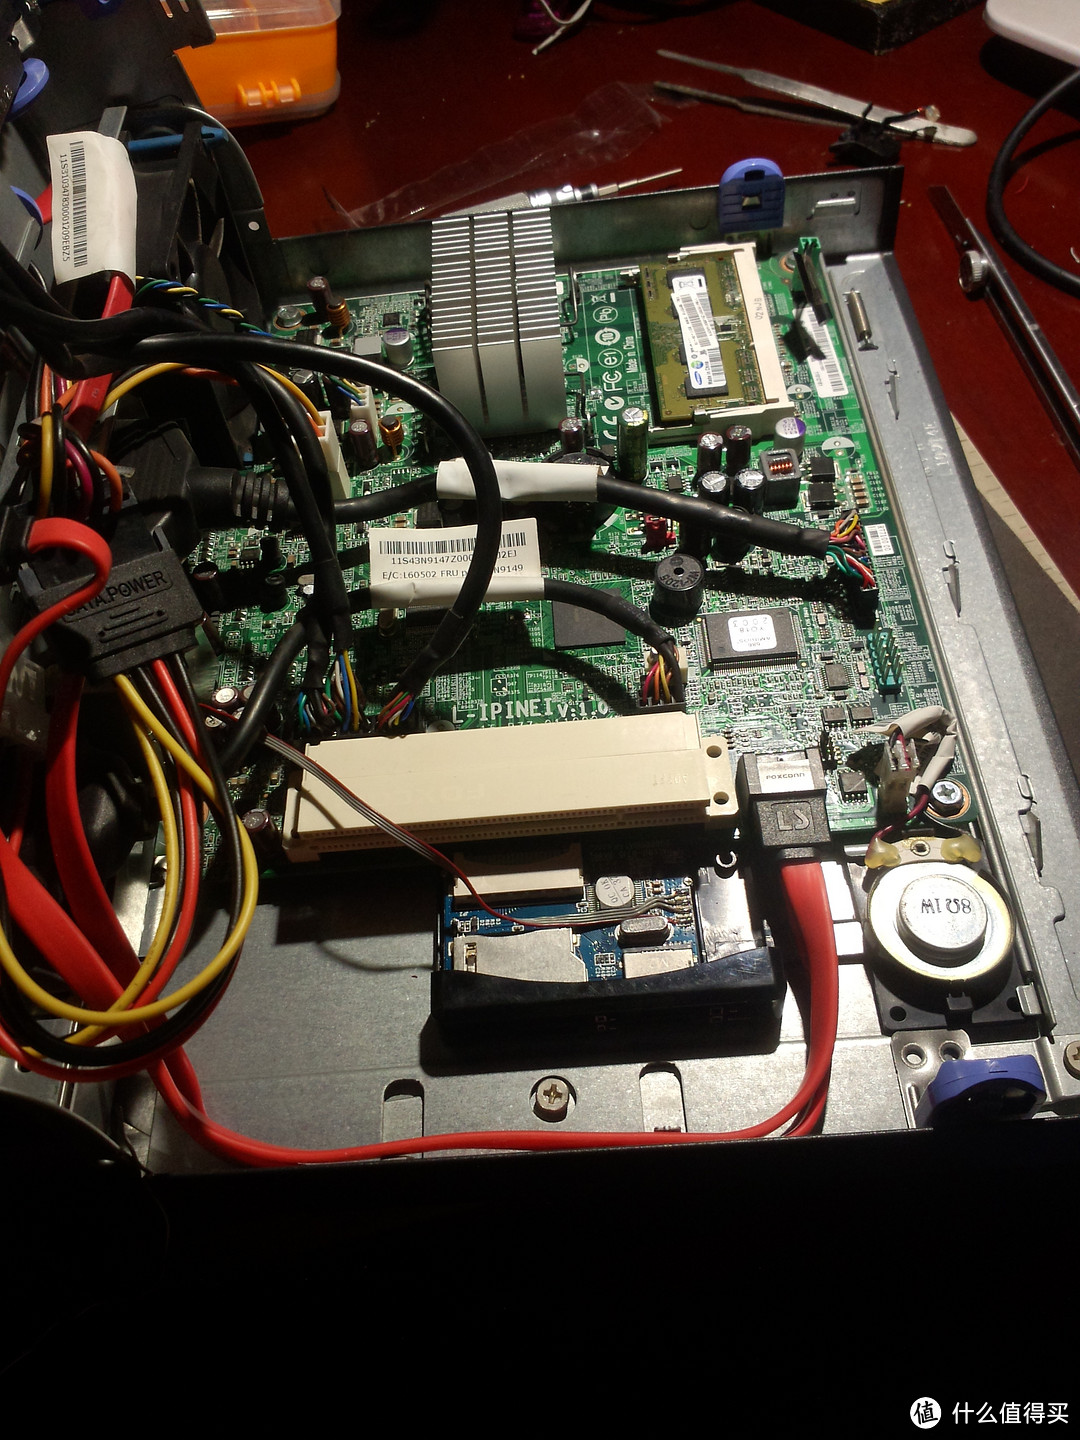 读卡器用热熔胶固定在没用的PCI接口旁，这里空间很大